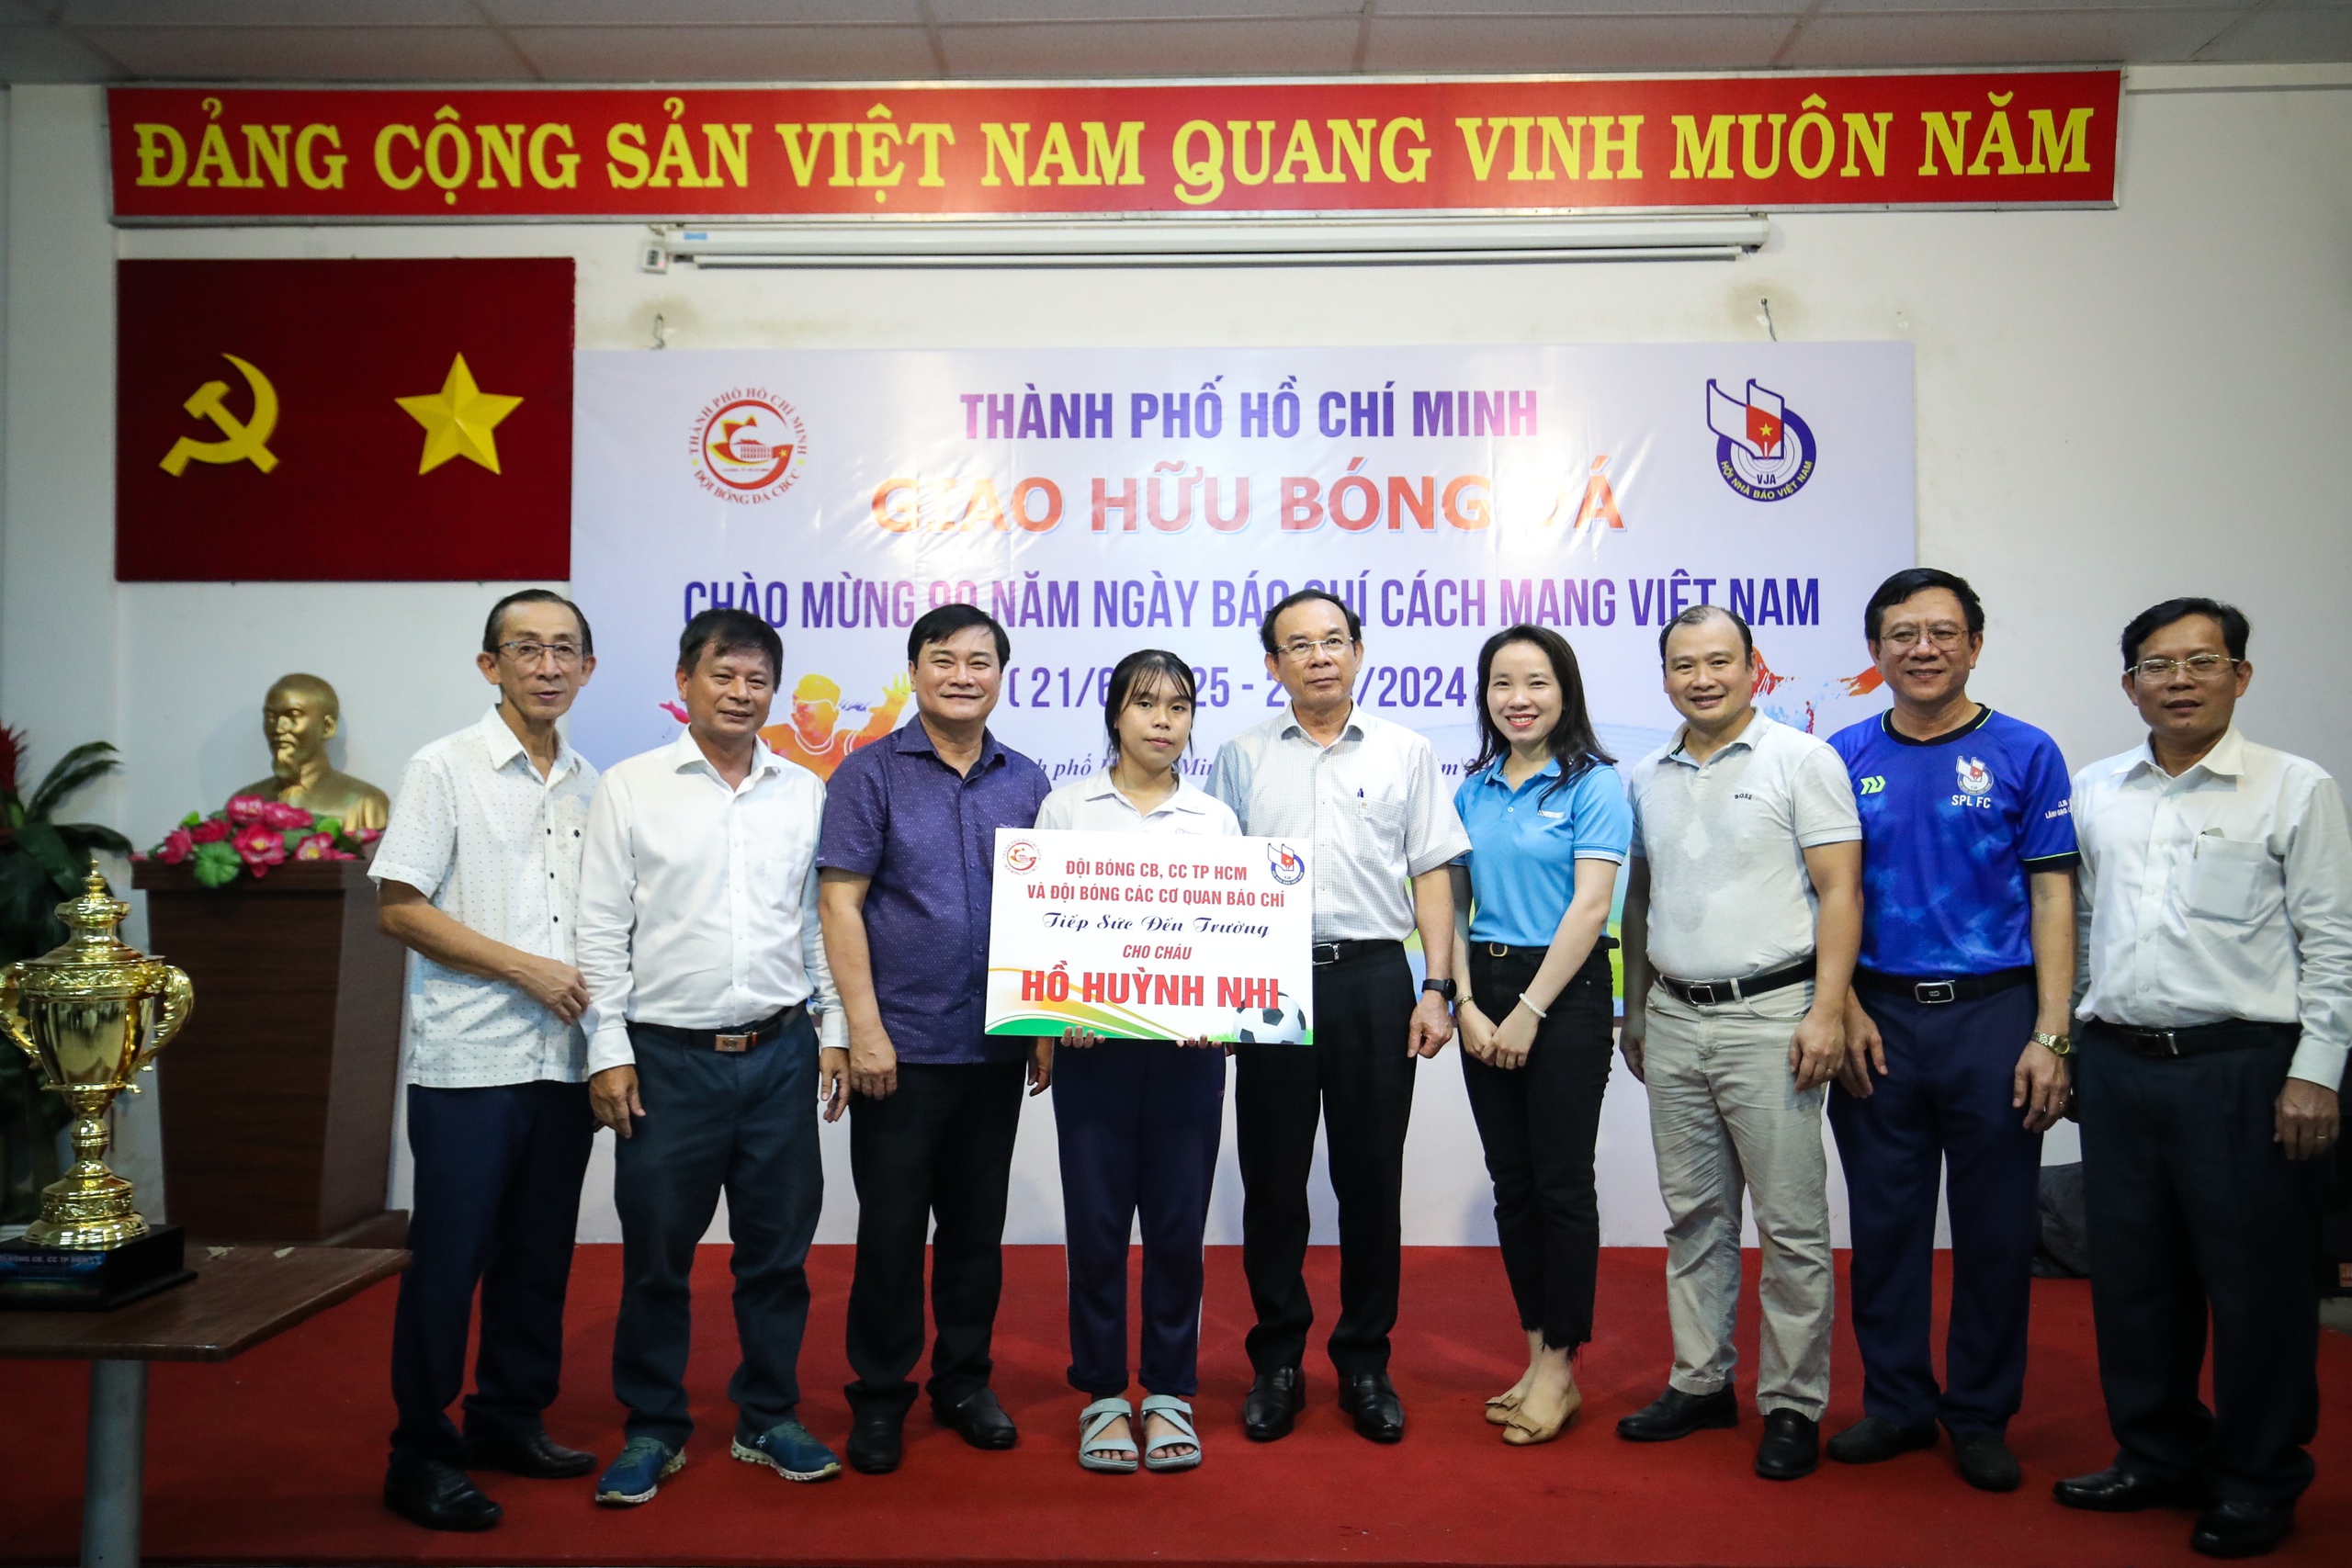 Bí thư Thành ủy TPHCM Nguyễn Văn Nên (thứ 5 từ phải sang) và đại diện lãnh đạo các cơ quan báo chí trao số tiền quyên góp sau trận đấu tặng trường hợp học sinh có hoàn cảnh khó khăn